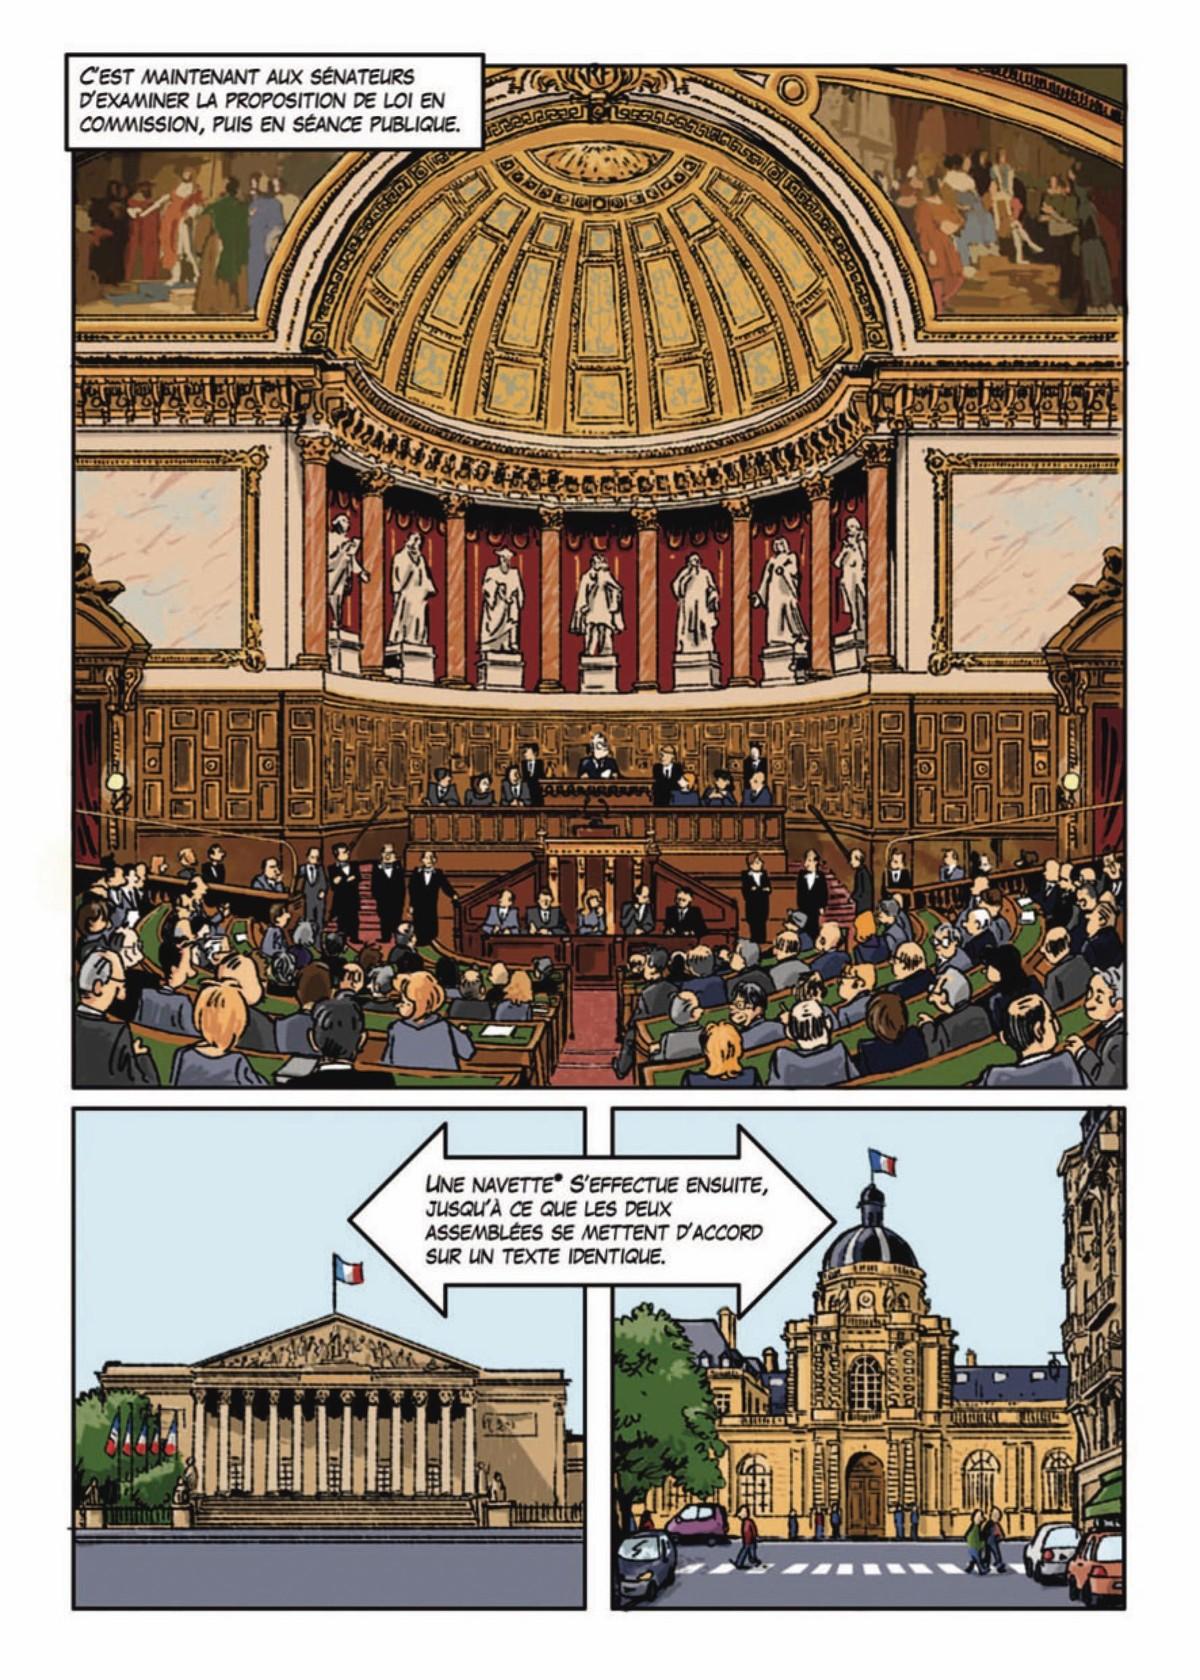 Bande dessinée de G. Berquin, À la découverte de l'Assemblée nationale, 2011